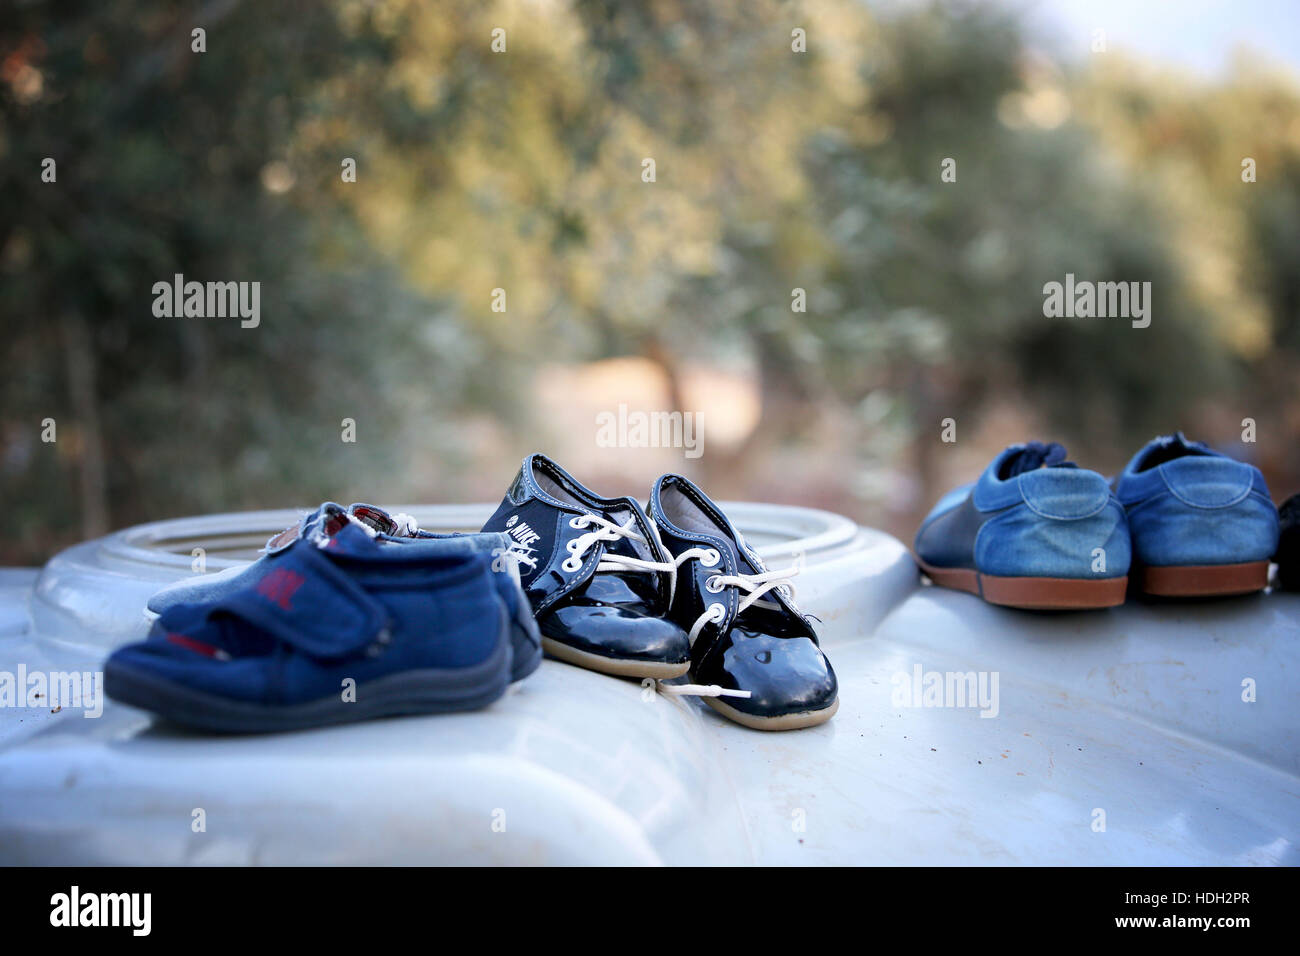 Les chaussures pour enfants qui ont été nettoyés sont laissés à sécher sur le dessus d'un réservoir d'eau dans un camp de réfugiés syriens de règlement situé dans une oliveraie à Saida, près de Tripoli, Liban. Banque D'Images